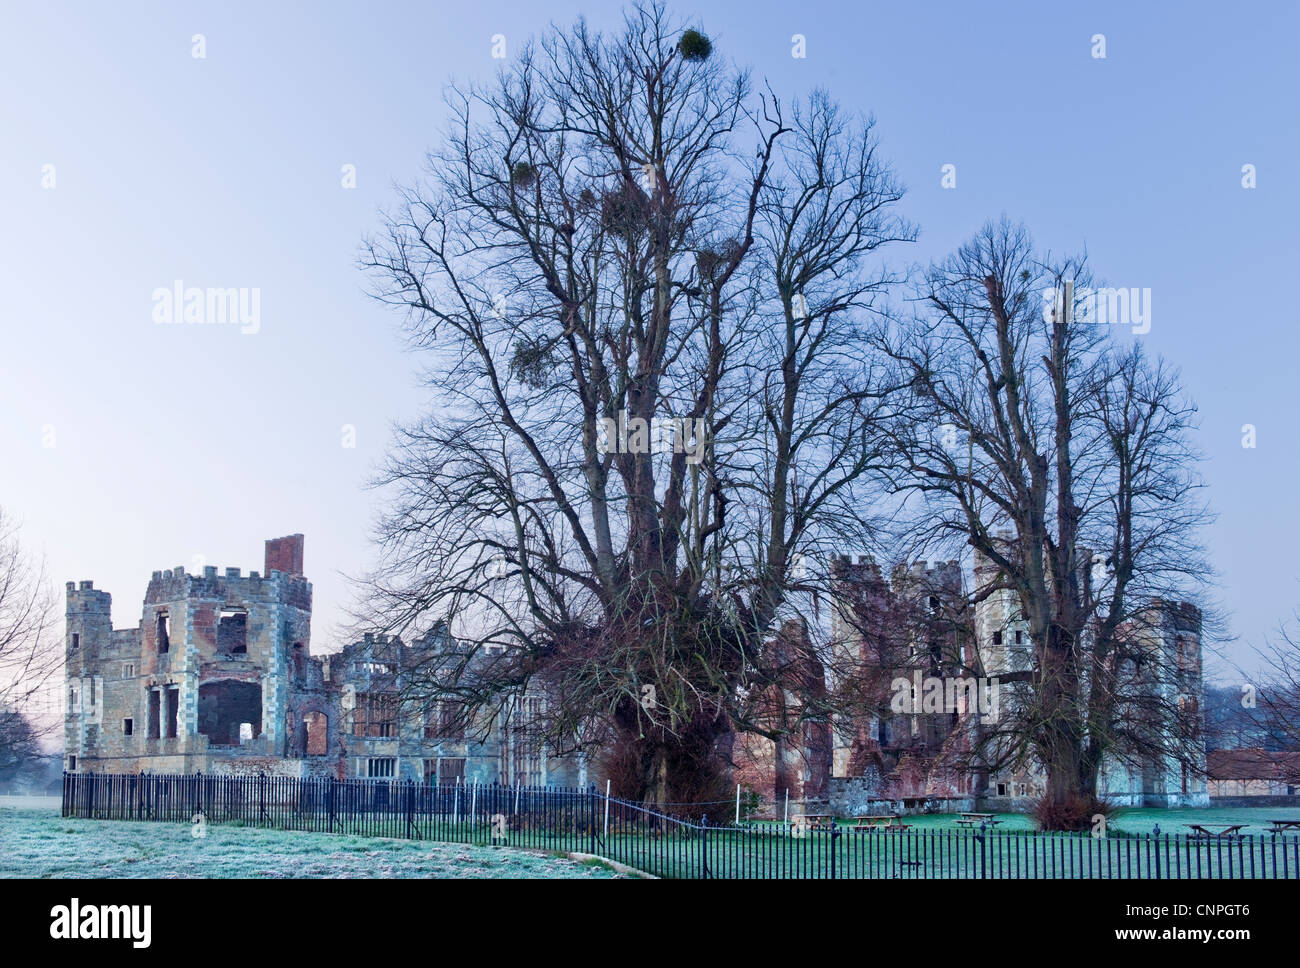 Die Ruinen von Cowdray Castle im Cowdray Park, Midhurst, West Sussex im frühen Morgen mit Frost auf den Boden und Kalk Bäumen Stockfoto